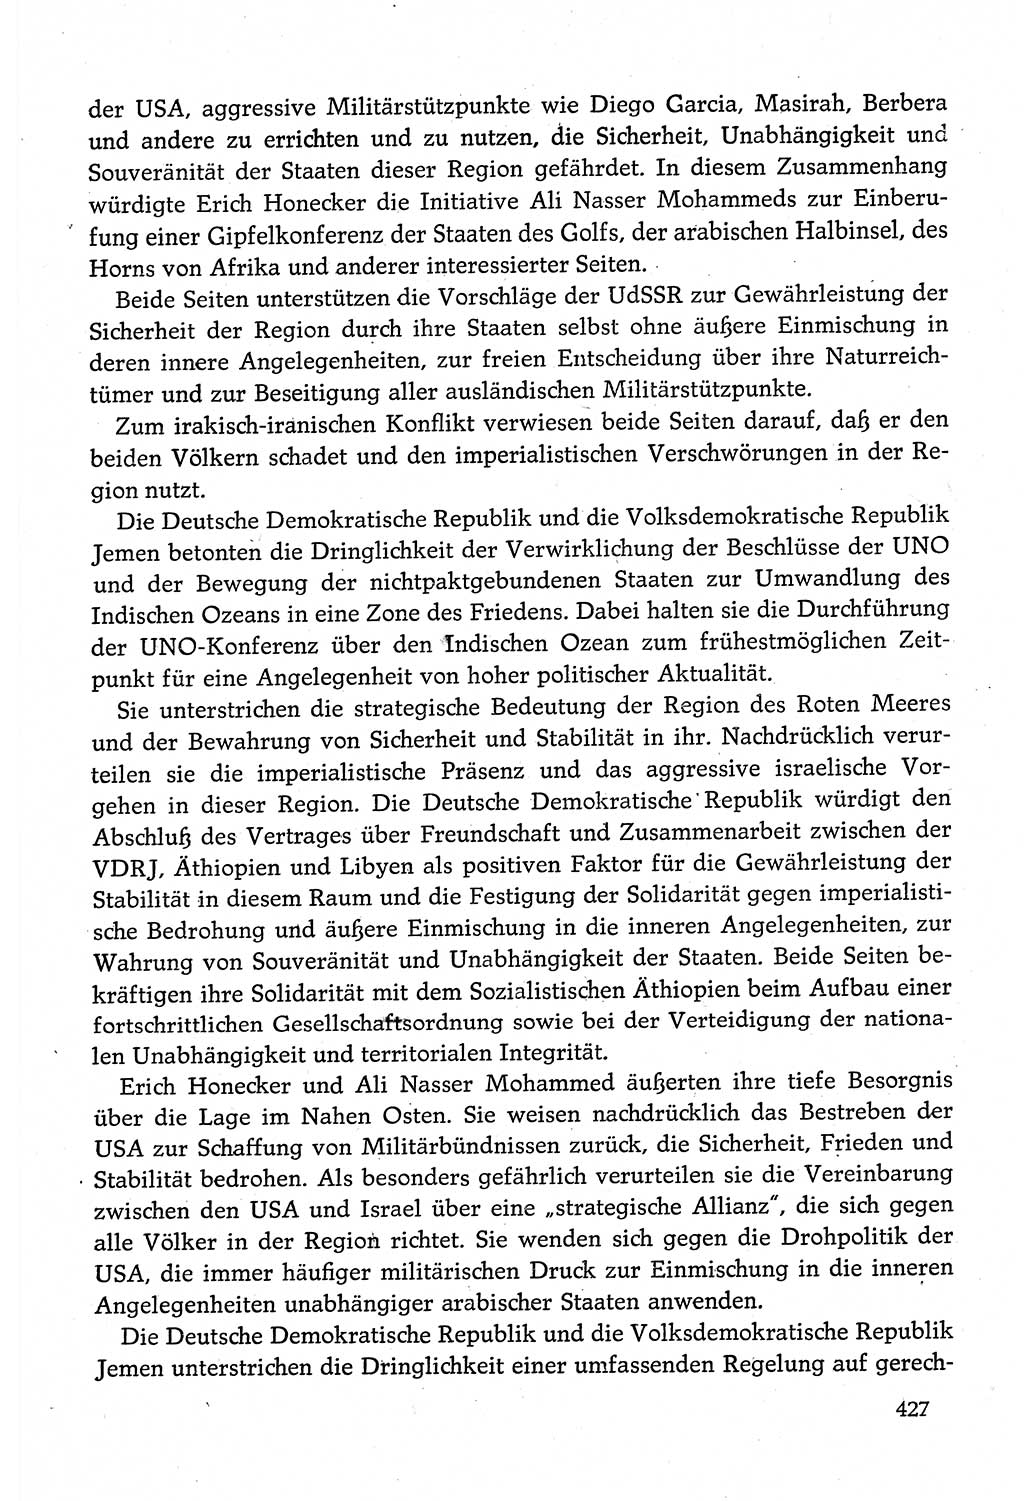 Dokumente der Sozialistischen Einheitspartei Deutschlands (SED) [Deutsche Demokratische Republik (DDR)] 1980-1981, Seite 427 (Dok. SED DDR 1980-1981, S. 427)